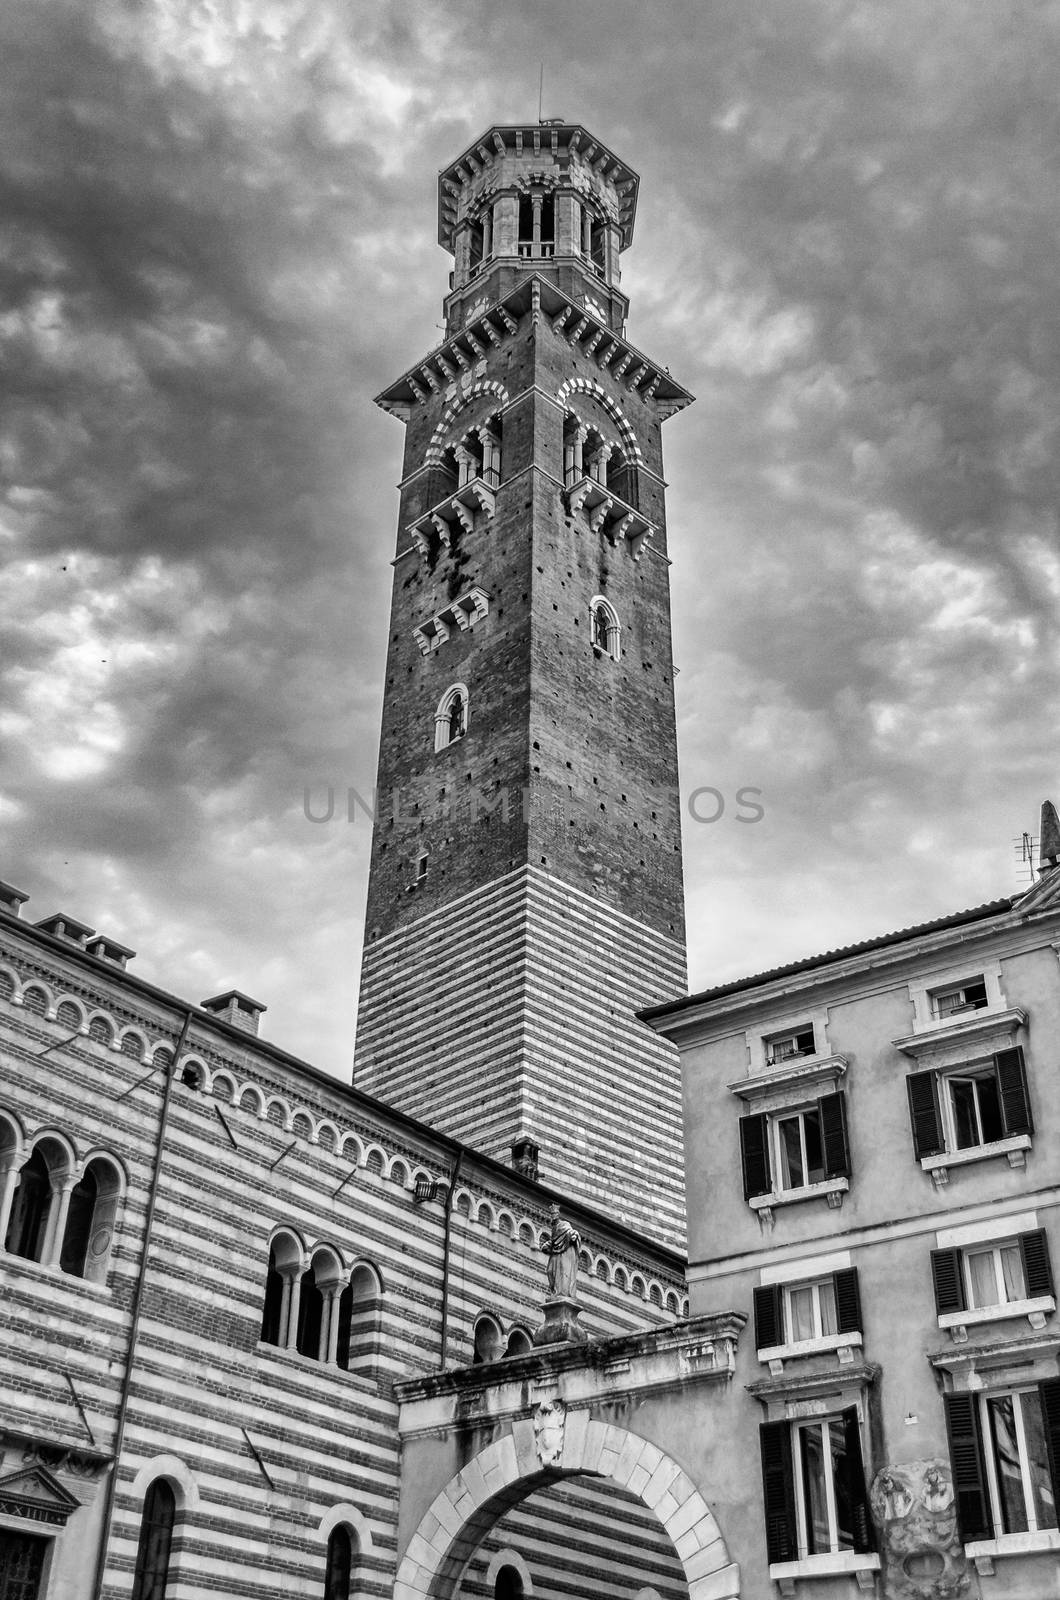 Lamberti Tower at the Palazzo della Ragione, in Piazza Signori in Verona, Italy